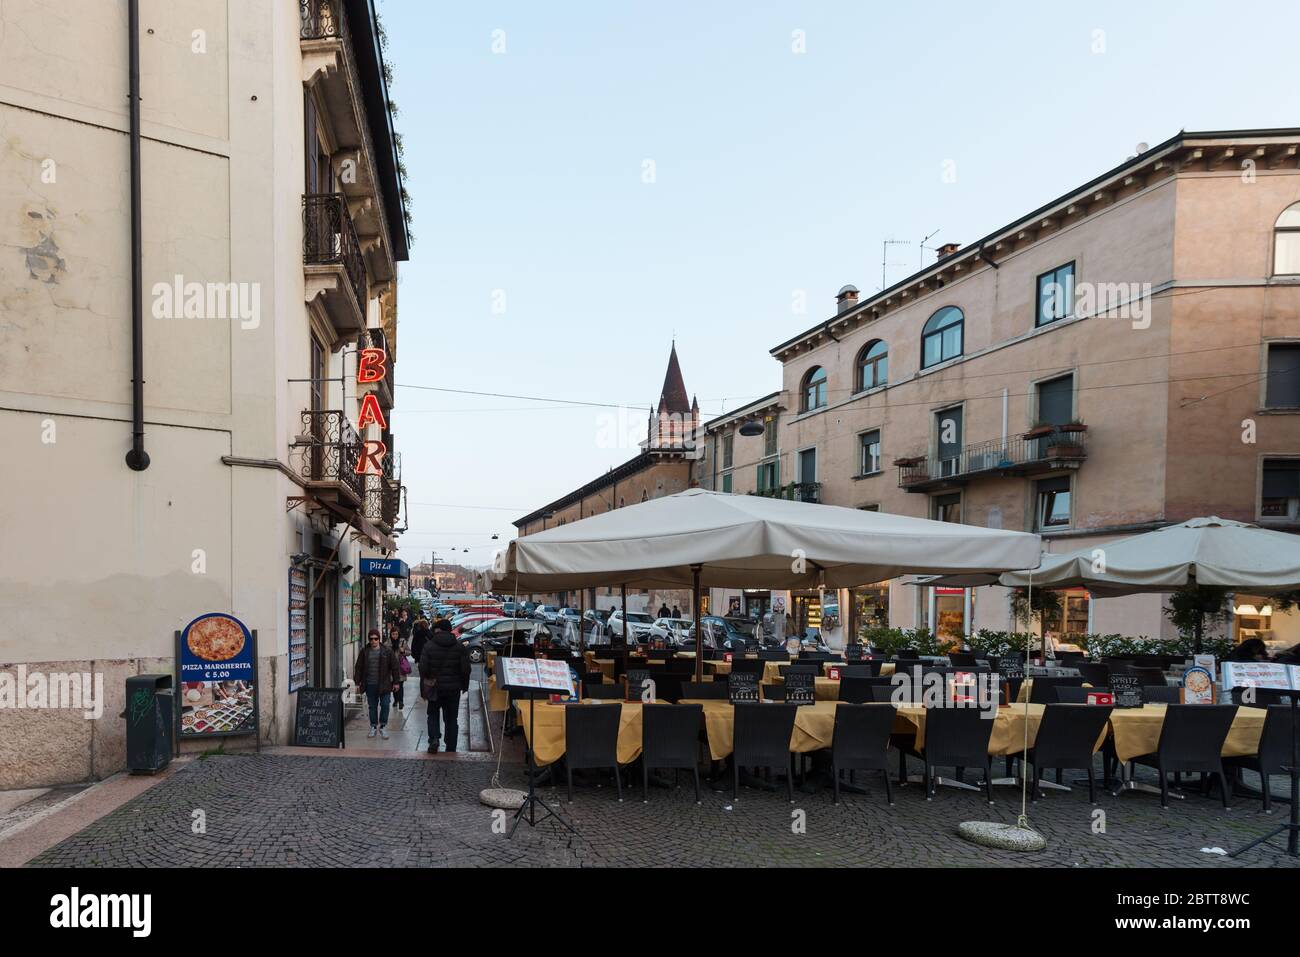 VERONA, ITALIA - 14, MARZO, 2018: Imagen horizontal de restaurantes italianos en las calles de Verona, Italia Foto de stock